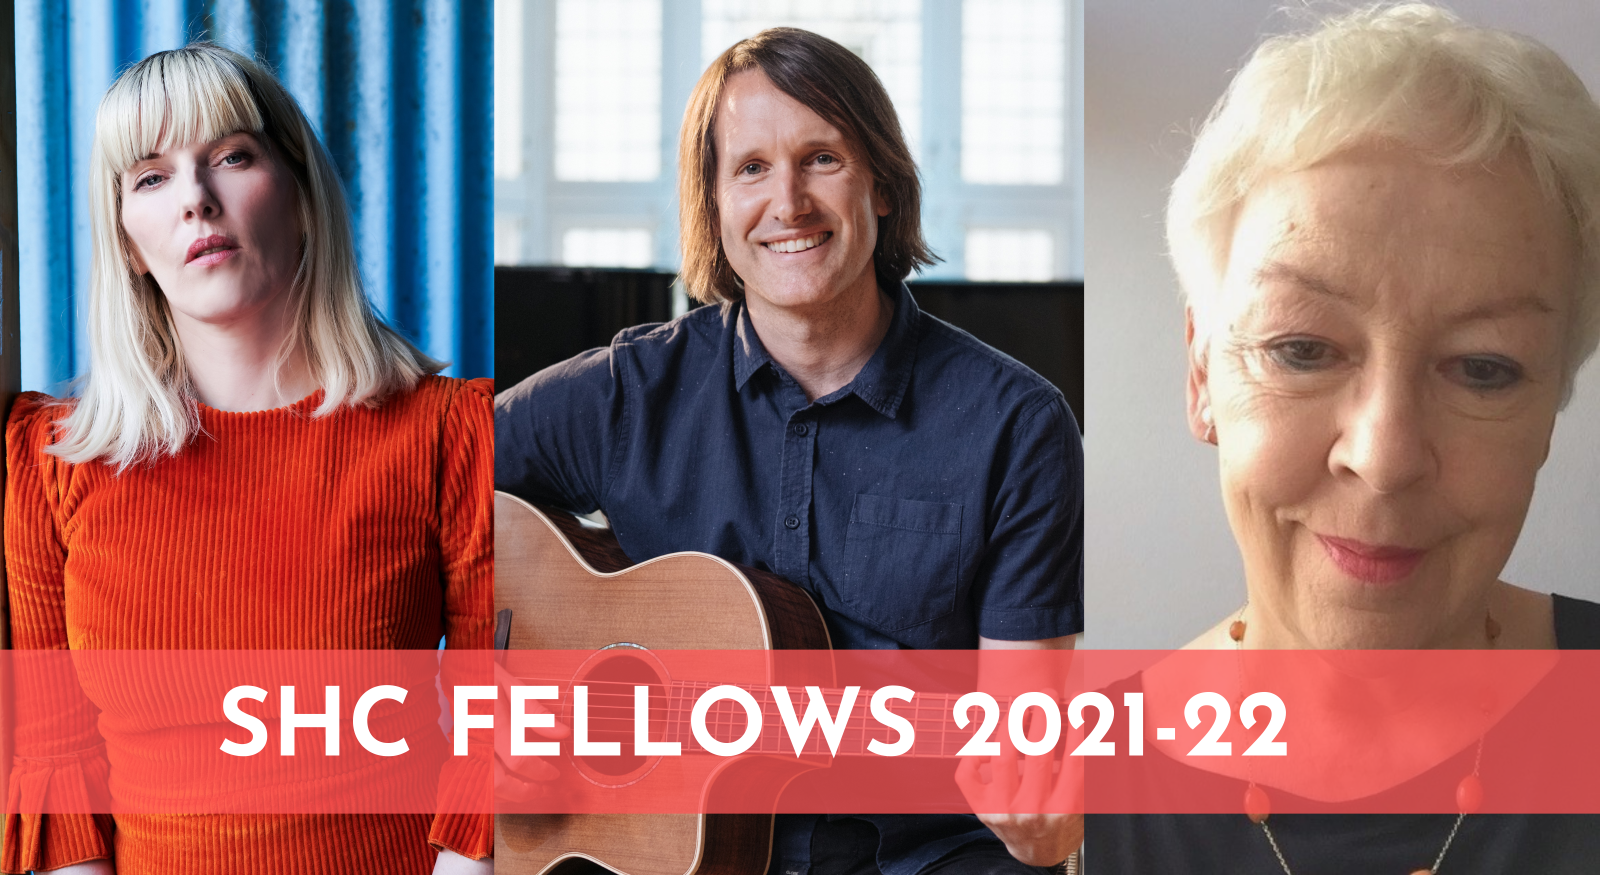 SHC Fellows 2021 Announcement